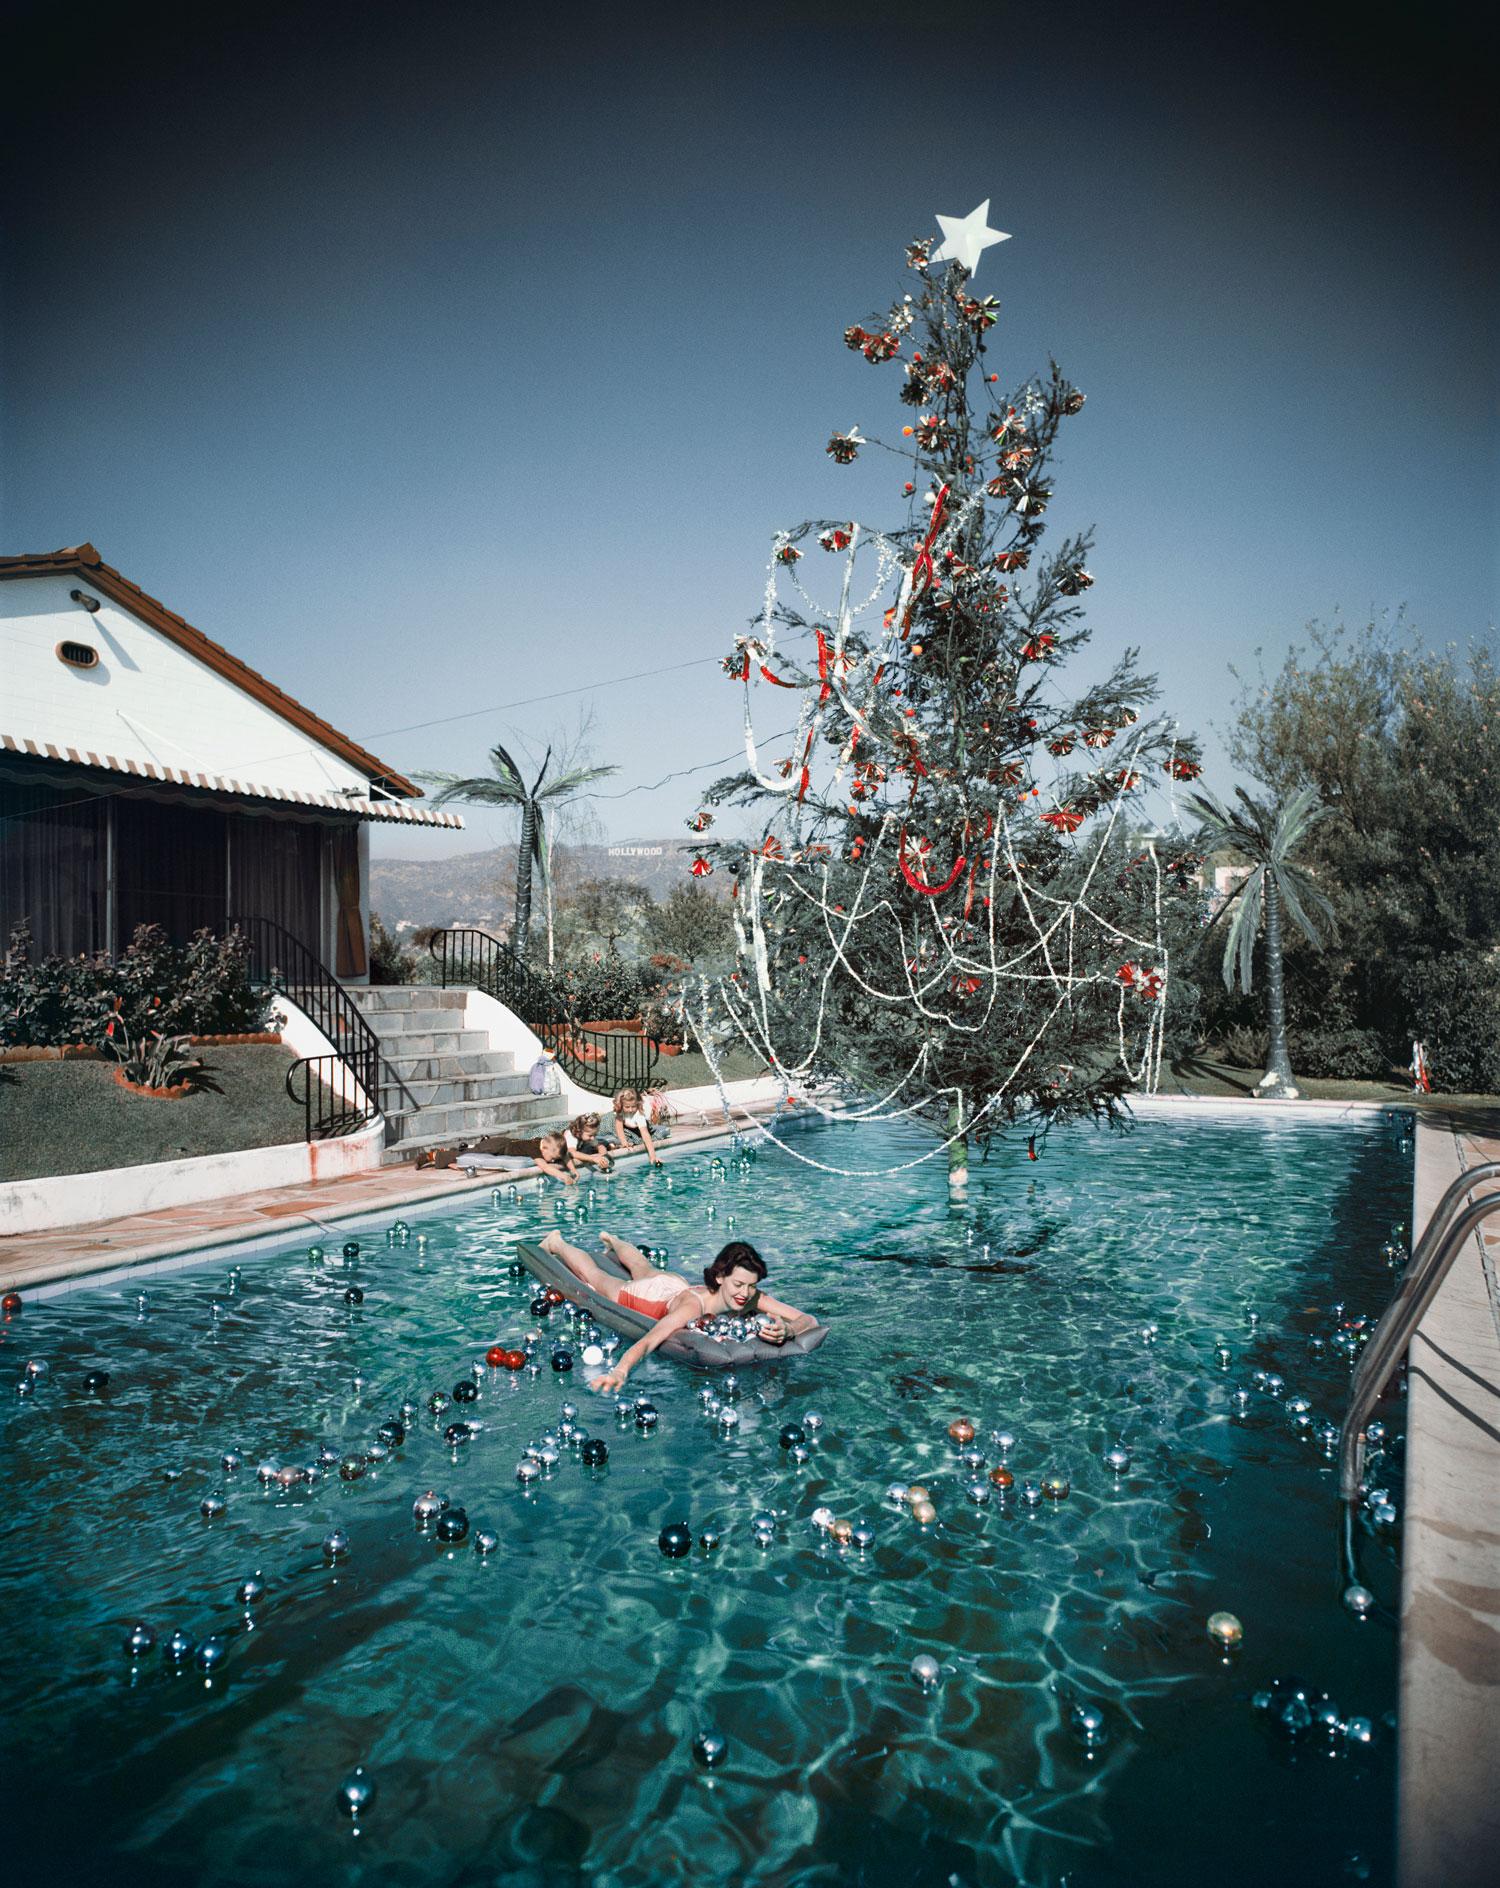 Schlanke Aarons
Weihnachten schwimmen
1954 (später gedruckt)
C Druck 
Nachlassgestempelte und nummerierte Auflage von 150 Stück 
mit Echtheitszertifikat

Rita Aarons, die Ehefrau des Fotografen Slim Aarons, schwimmt in einem mit schwimmenden Kugeln